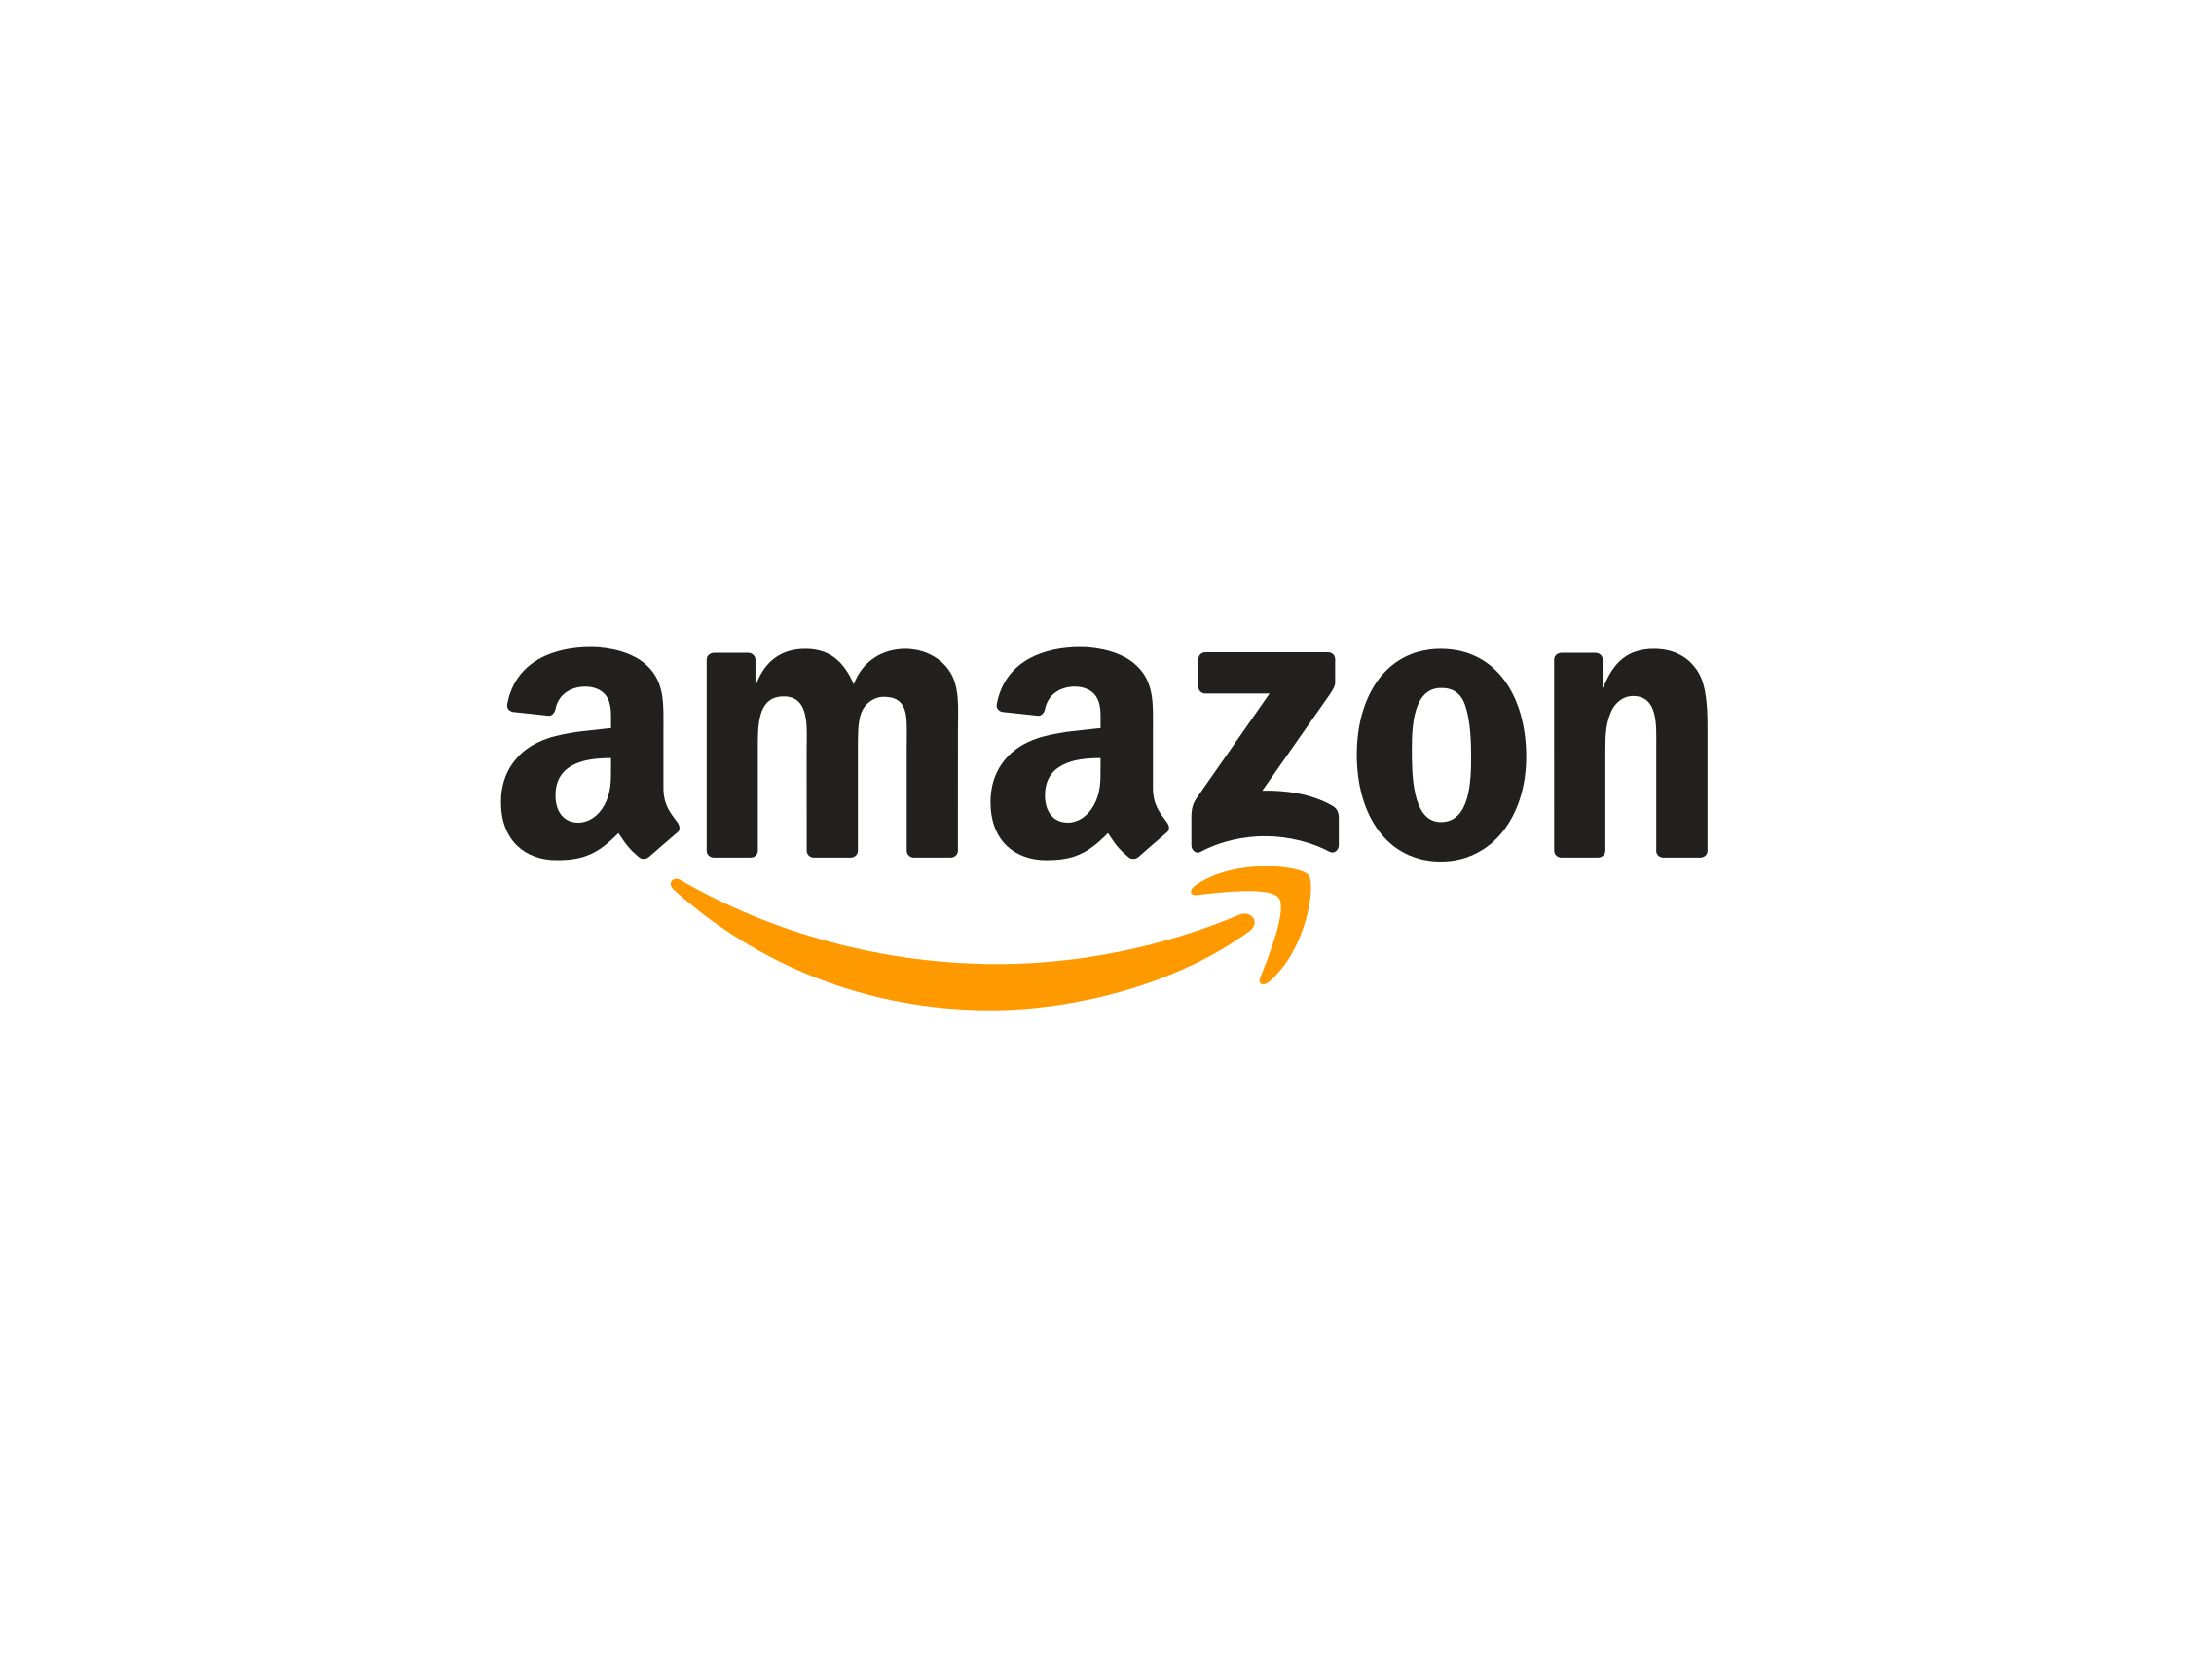 Amazong Logo - Amazon-logo - :